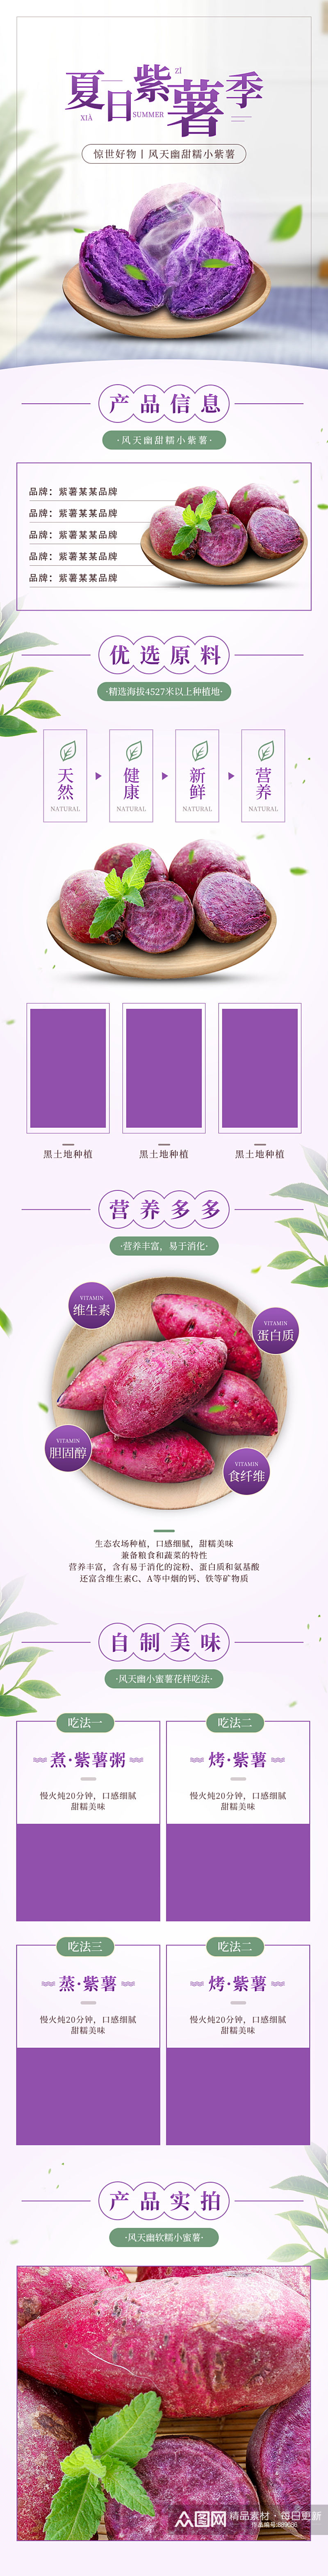 天猫淘宝紫薯红薯详情页模版食品详情页素材